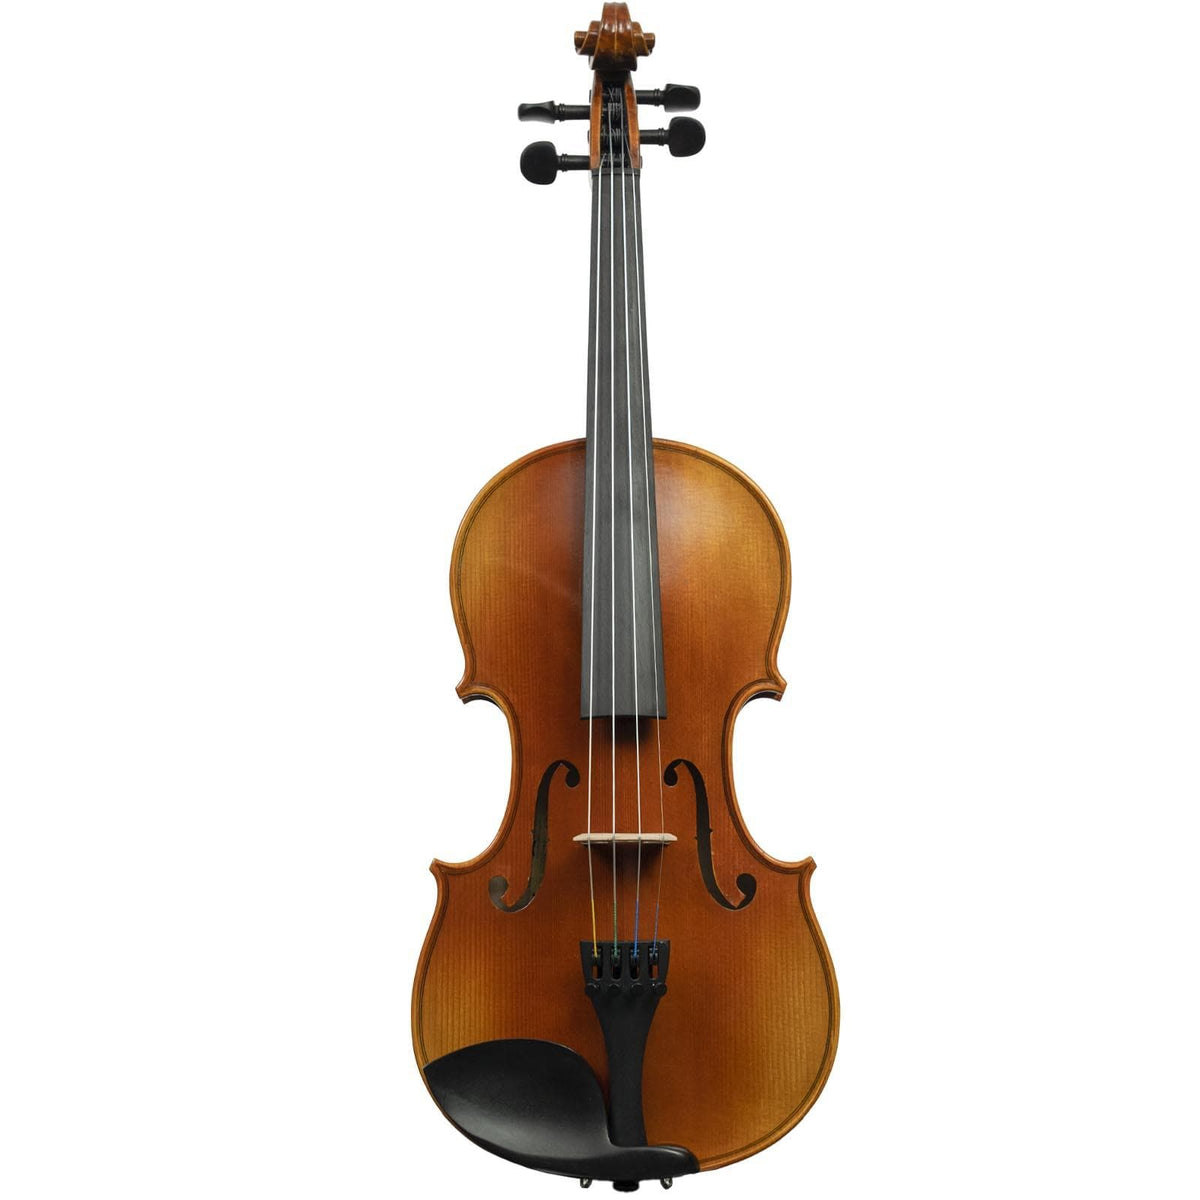 Preowned: Shar Rental Violin